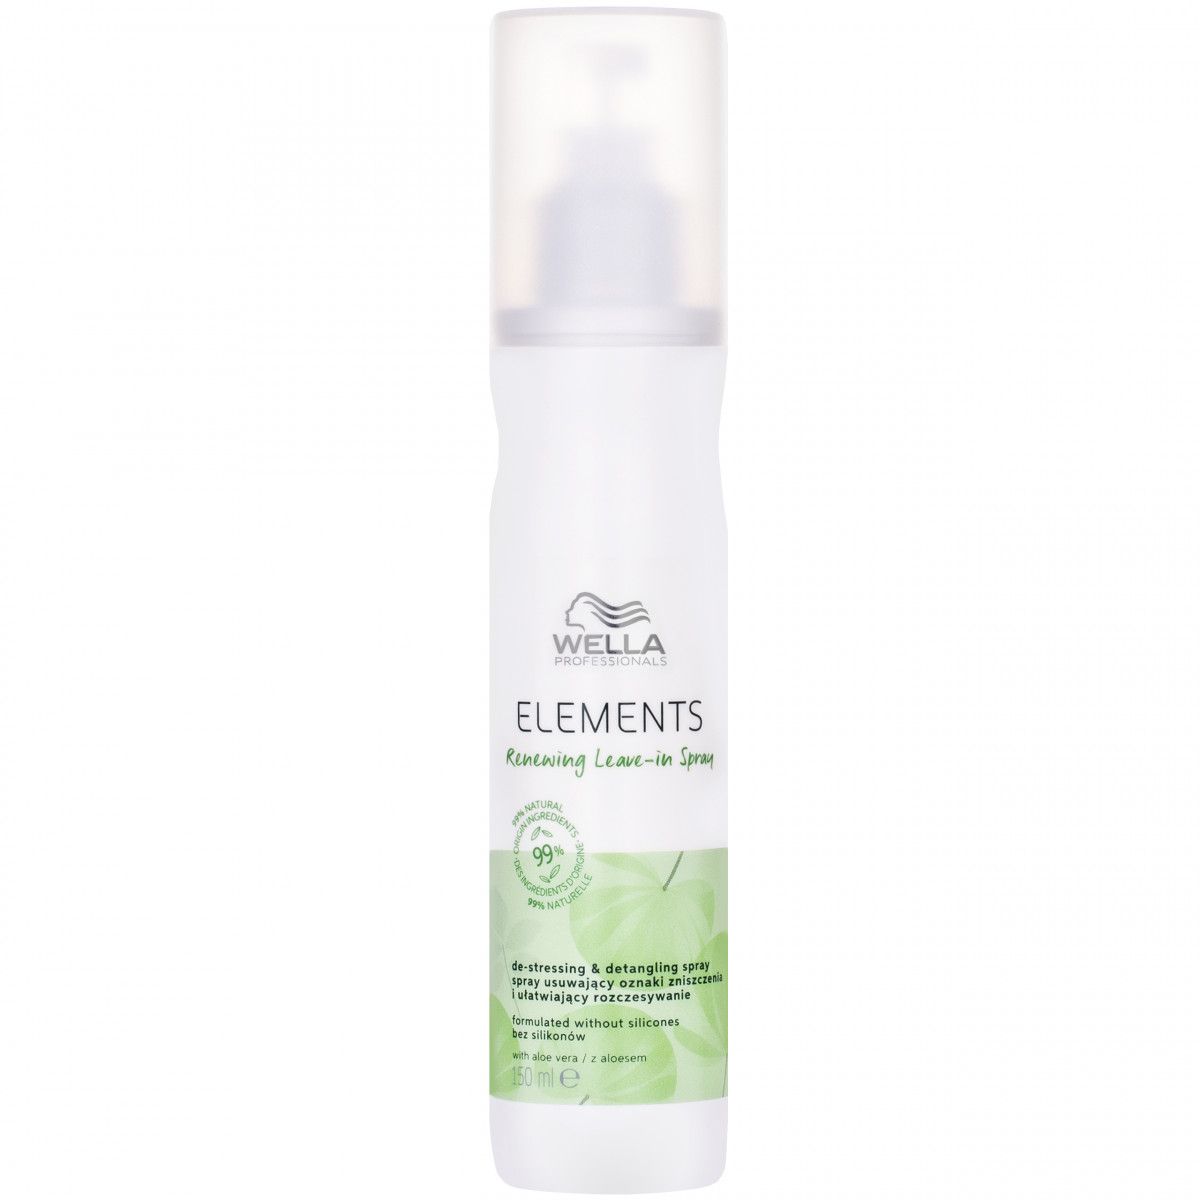 Wella Elements Renewing Leave-in Spray – odbudowująca odżywka do włosów w sprayu, 150 ml